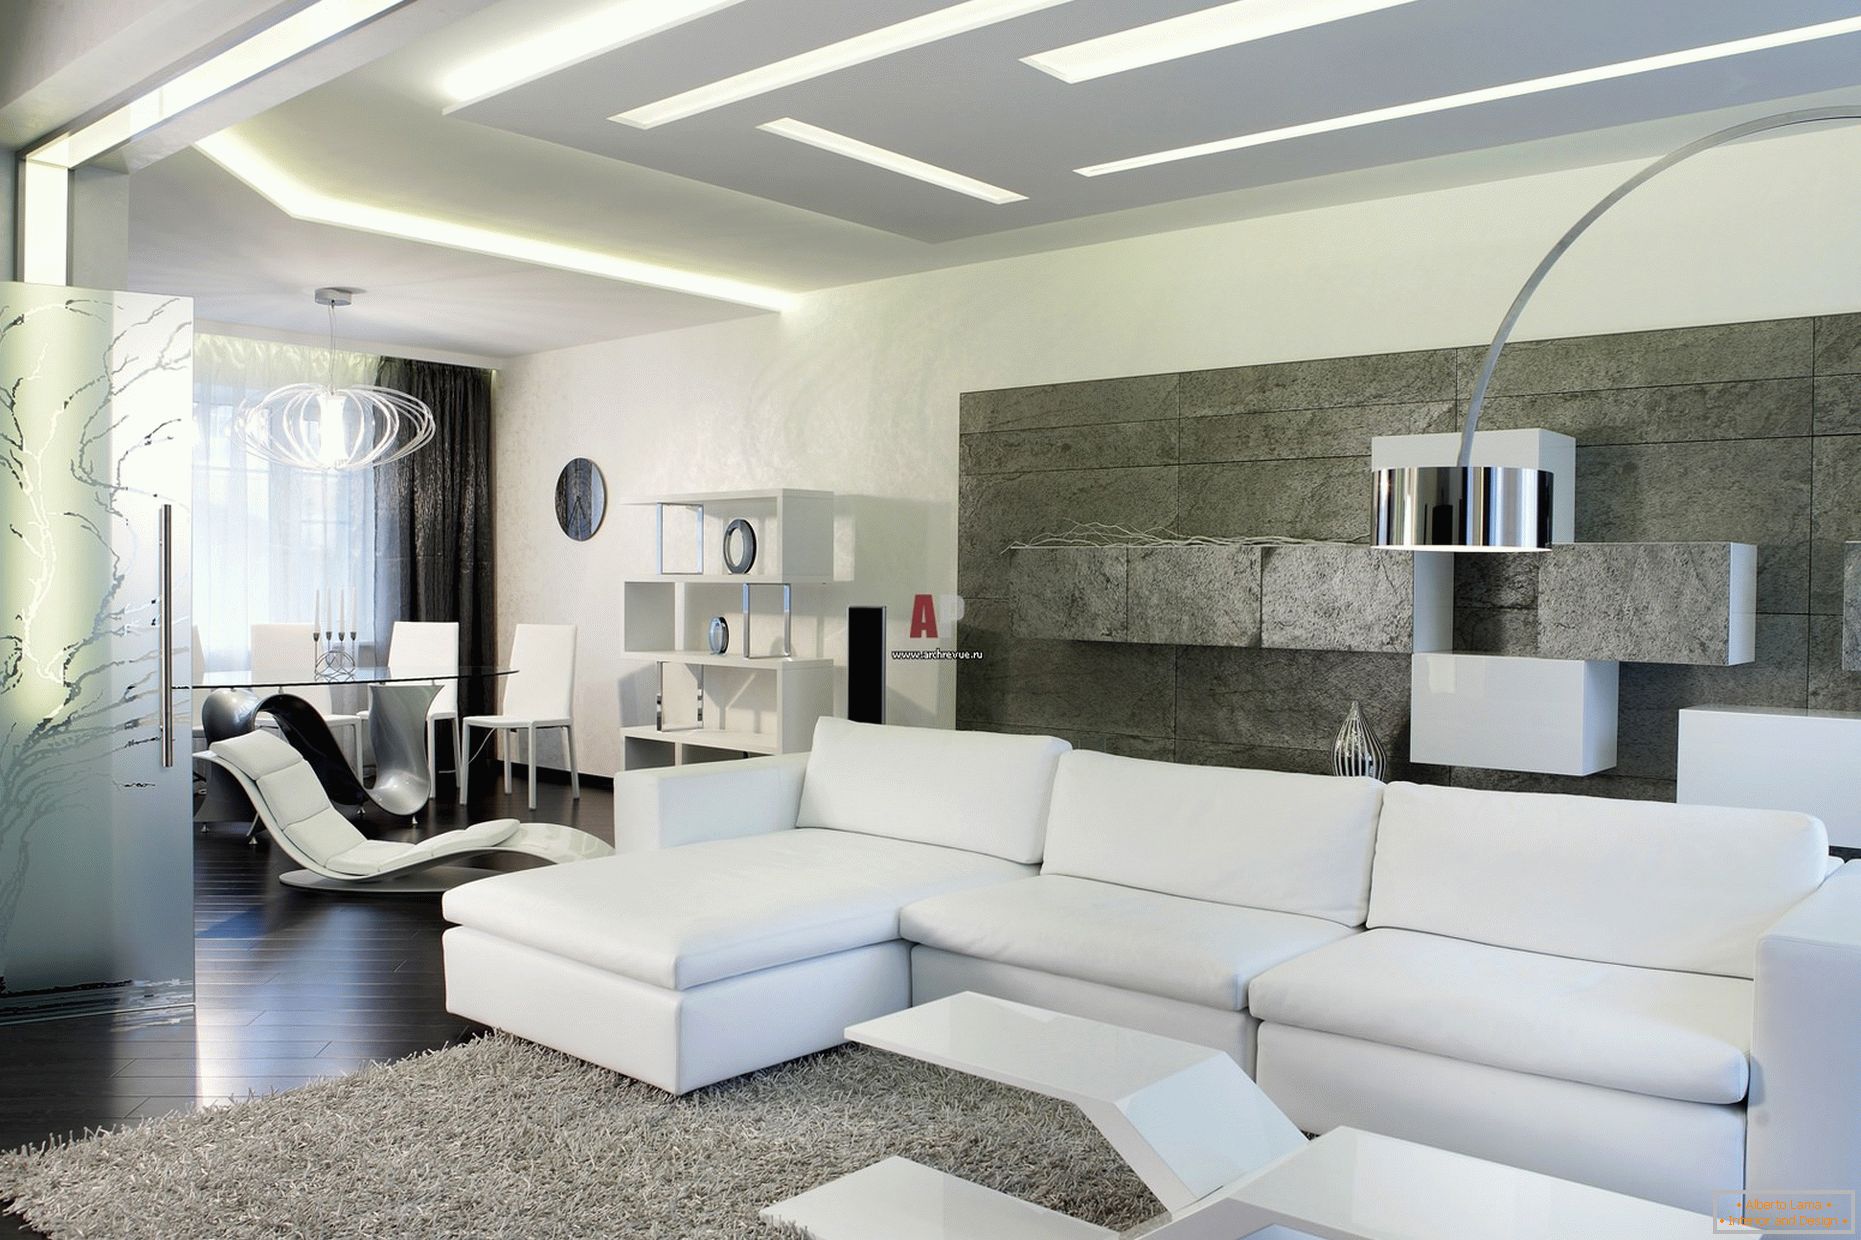 Die weiße Innenausstattung der Gäste des Zimmers im minimalistischen Stil ist bemerkenswert für ein modernes, gewagtes Design mit einem Hauch von High-Tech.